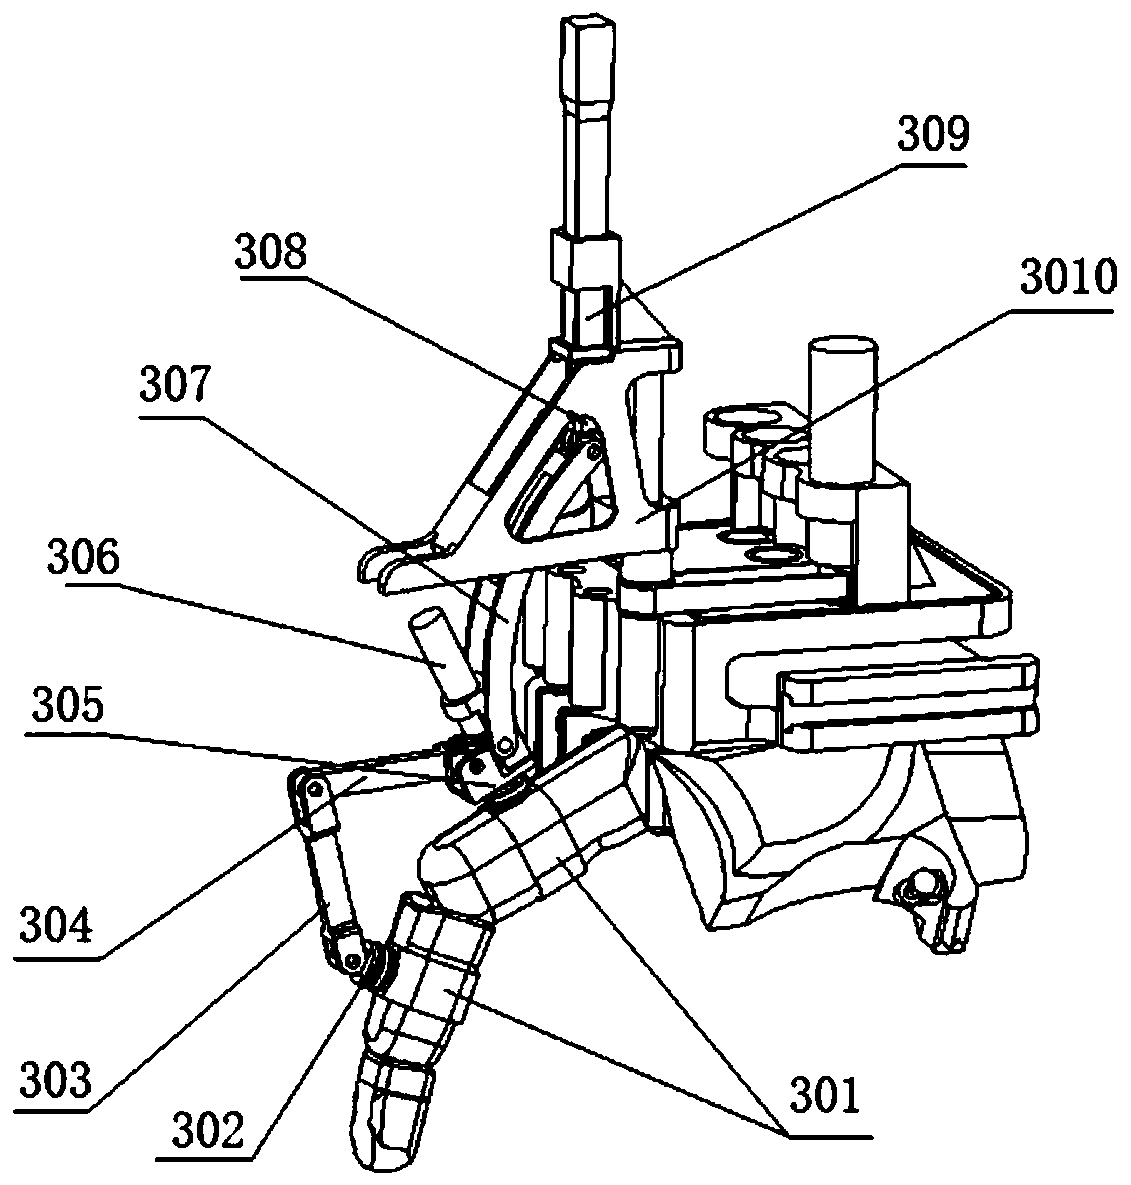 An exoskeleton-type 15-degree-of-freedom rehabilitation manipulator mechanism